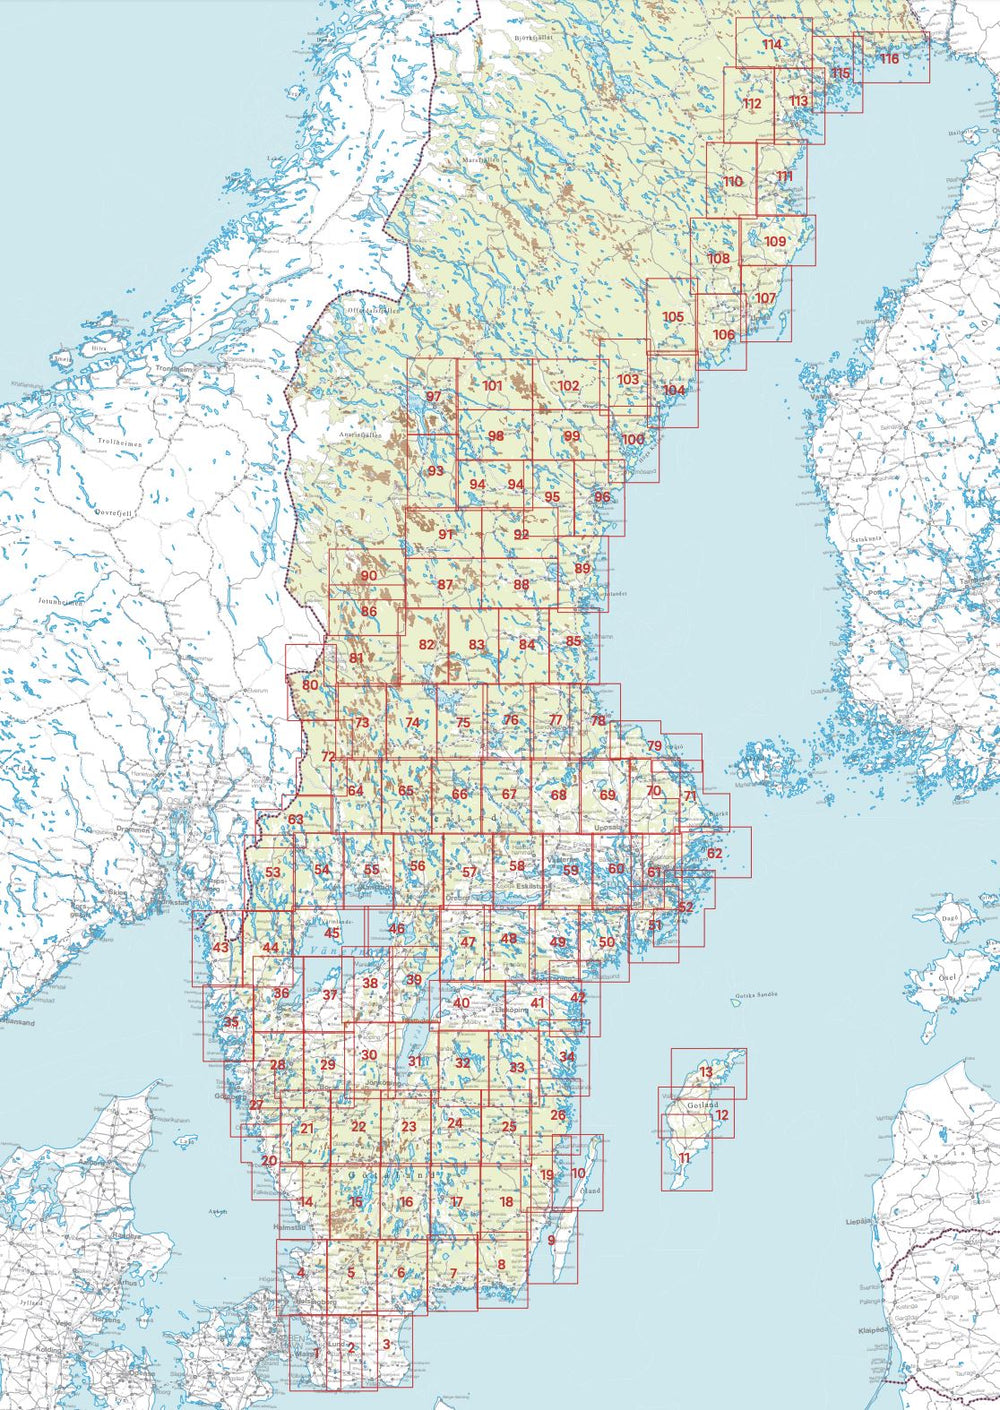 Carte topographique n° 69 - Uppsala (Suède) | Norstedts - Sverigeserien carte pliée Norstedts 